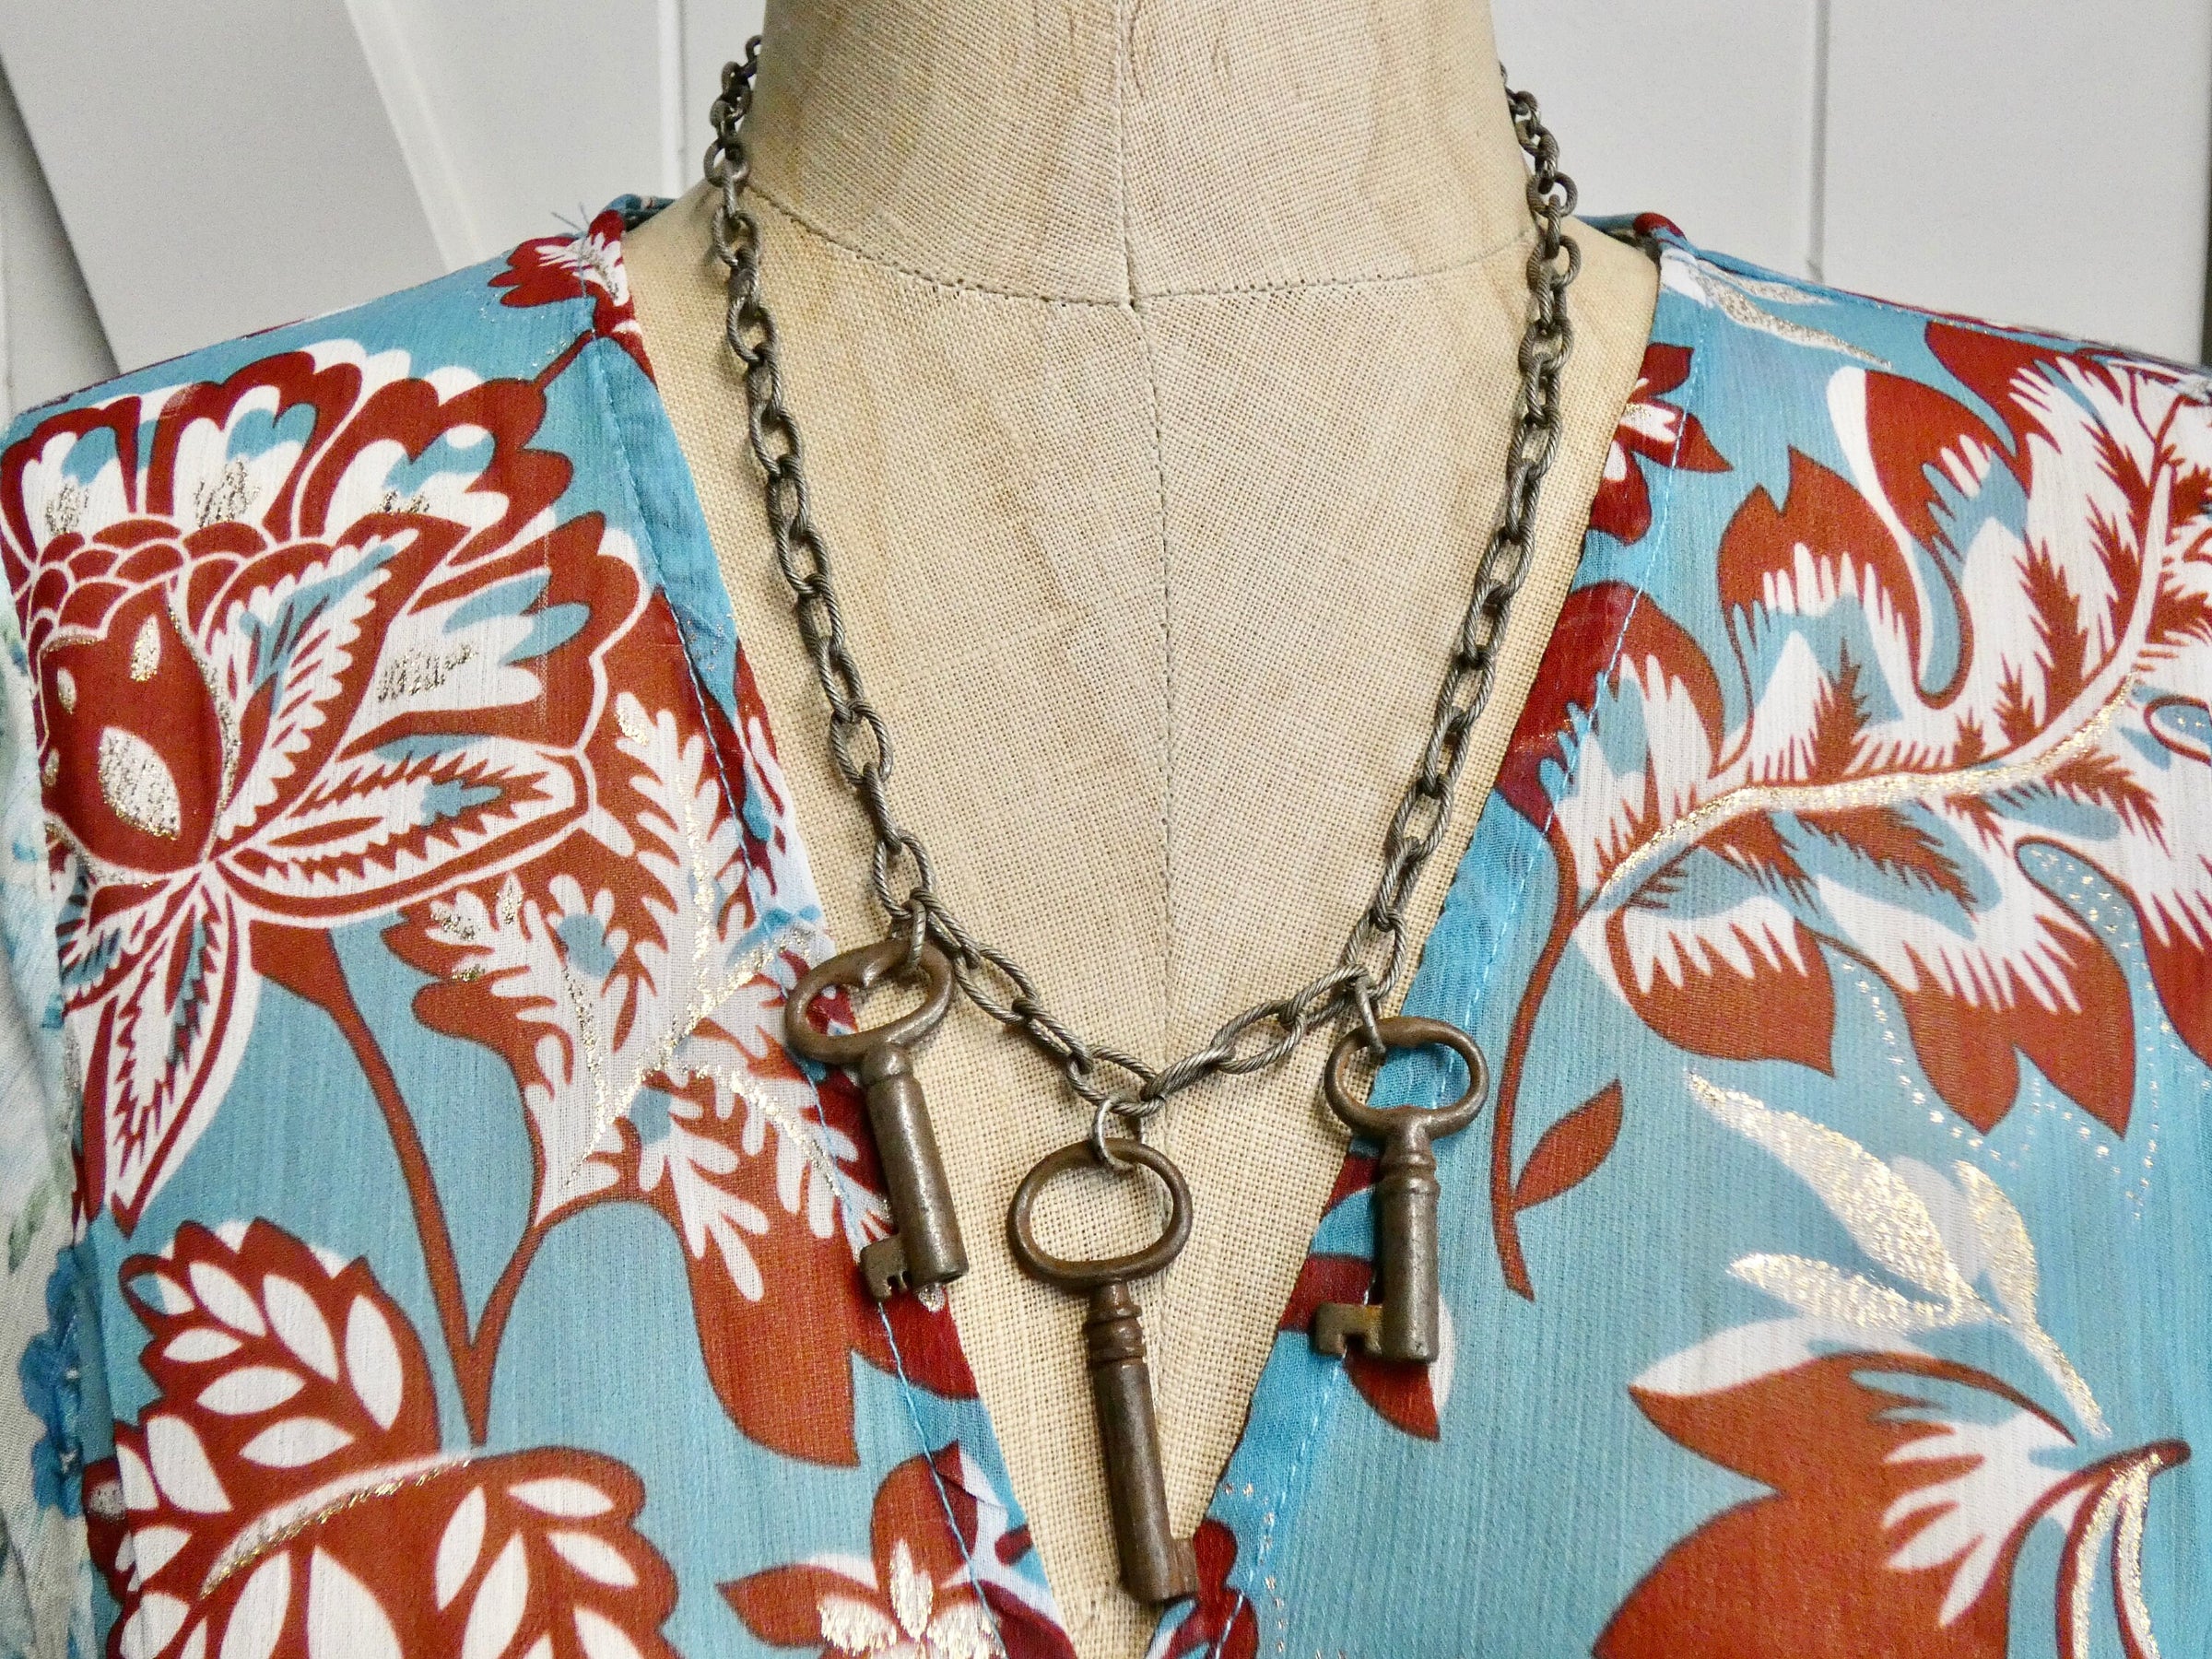 Vintage Skeleton Key Necklace